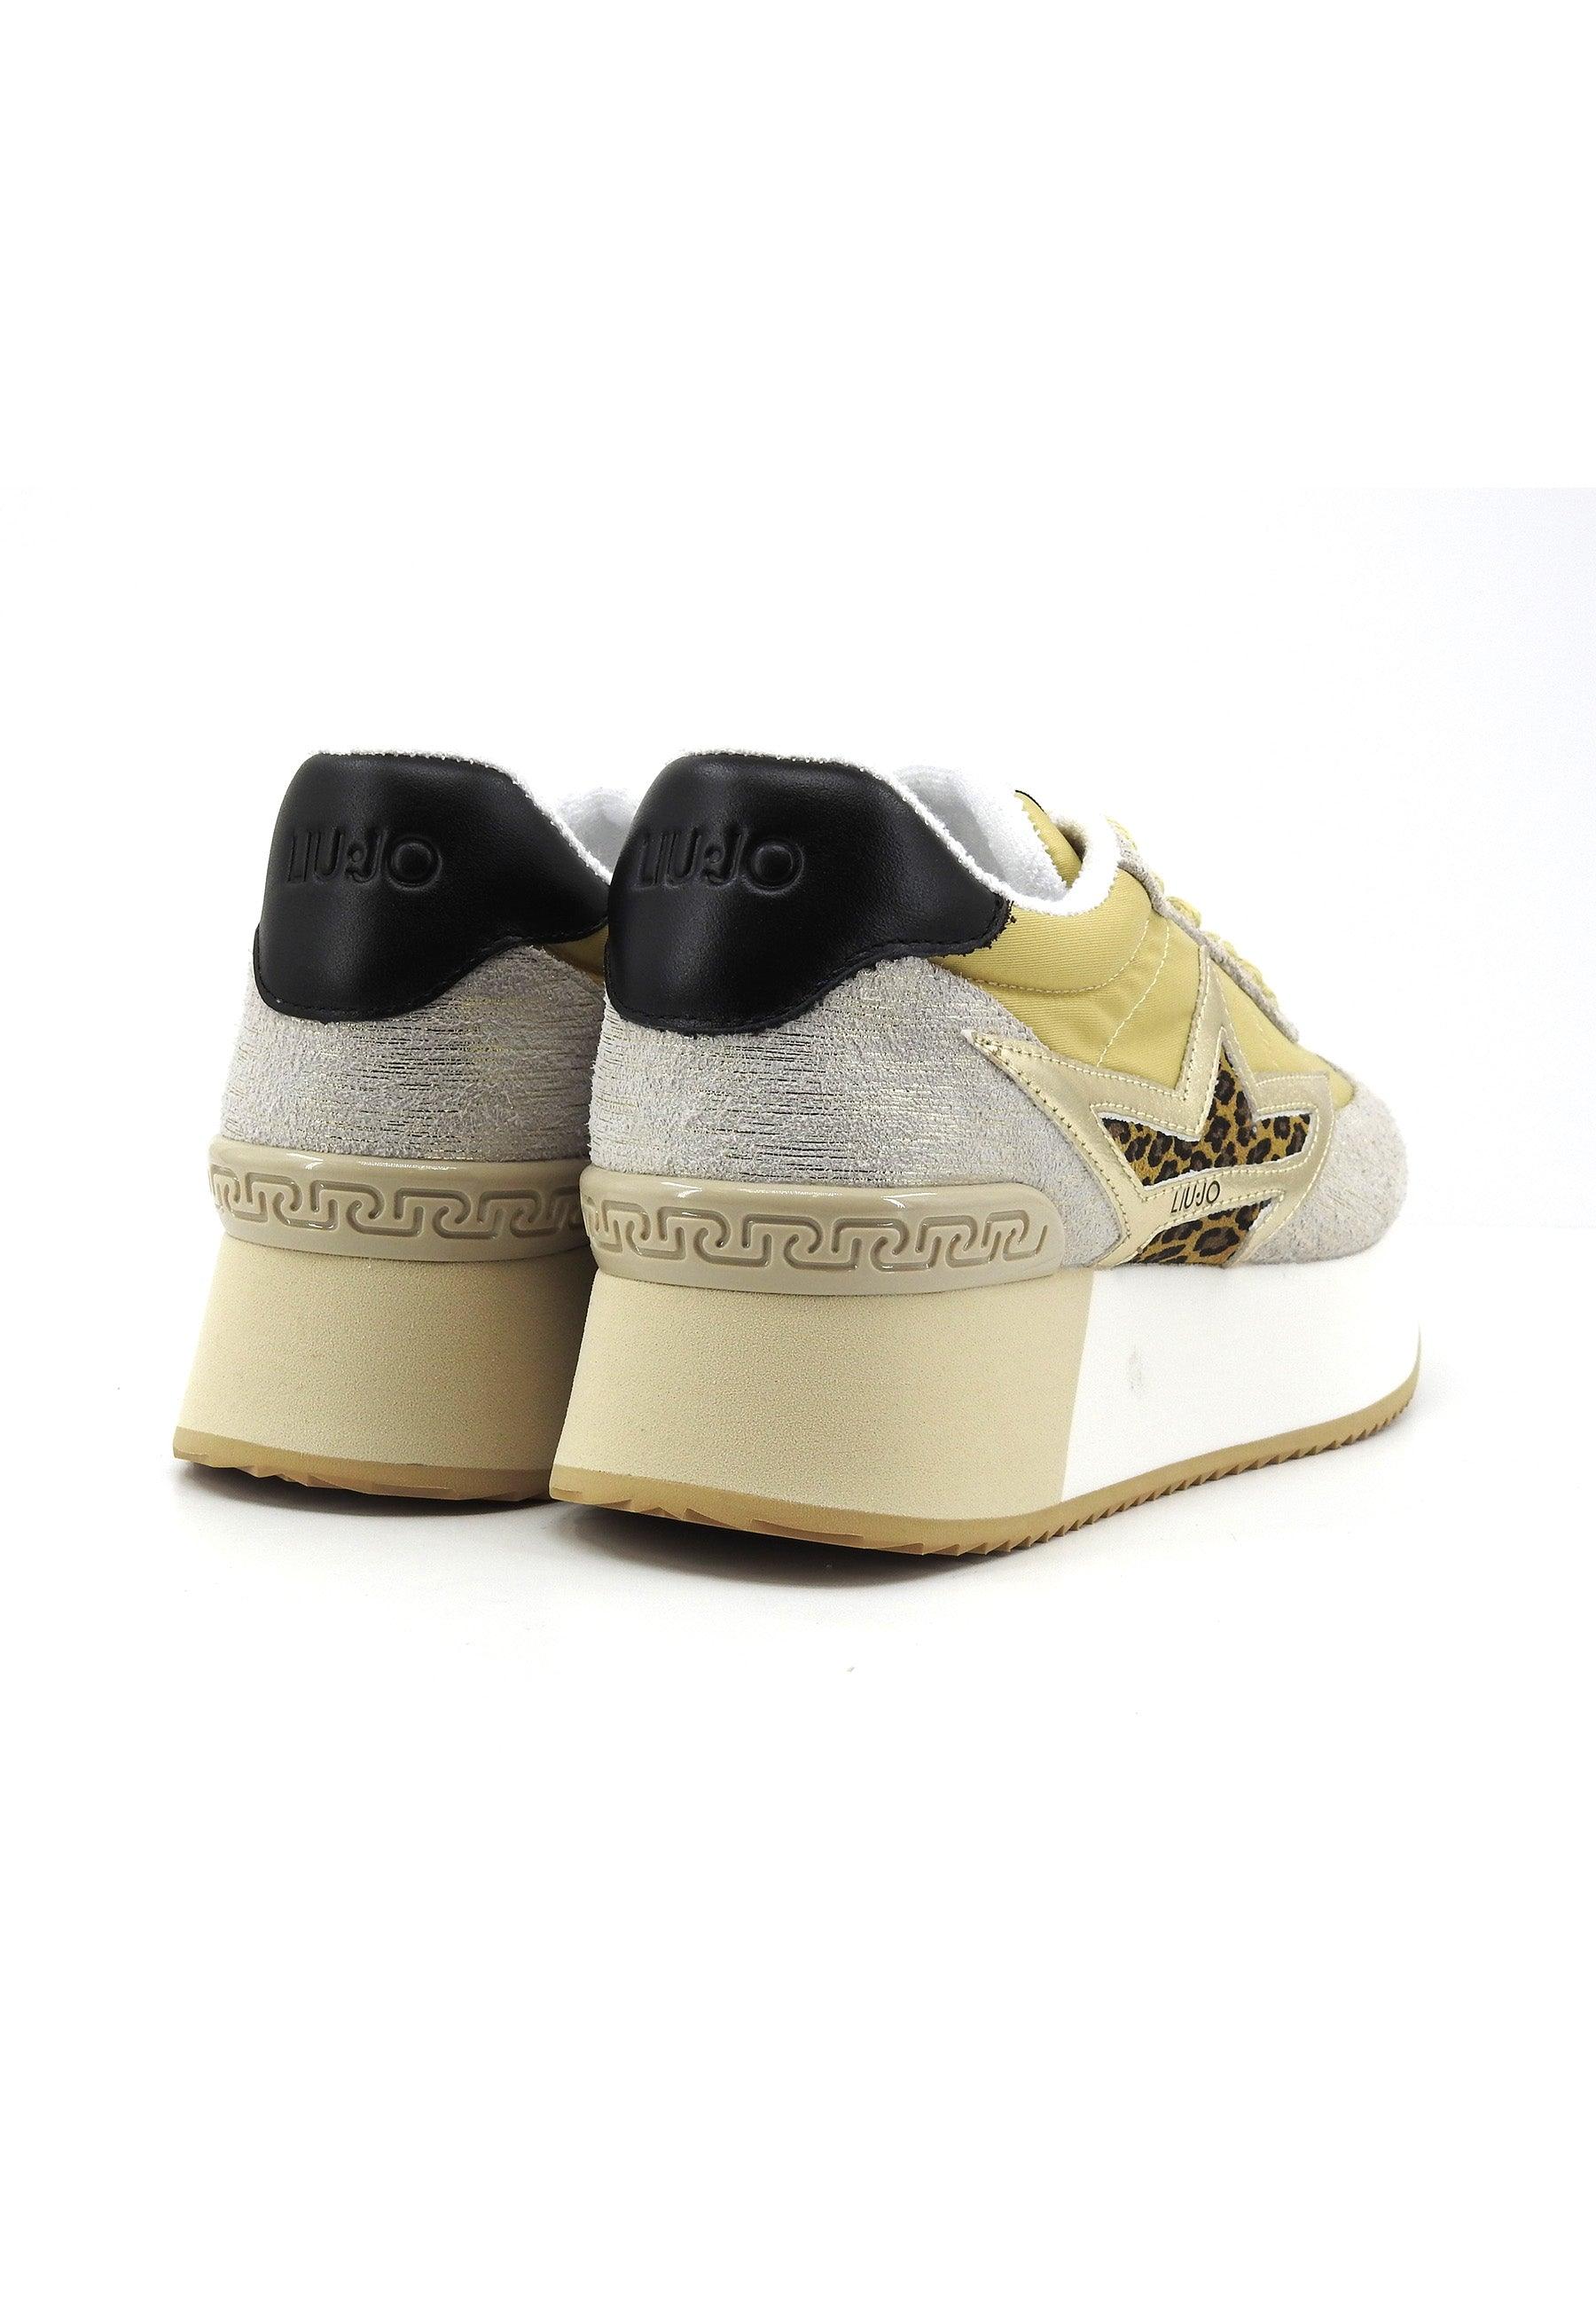 LIU JO Dreamy 03 Sneaker Donna Gold Palm Black BA4083PX508 - Sandrini Calzature e Abbigliamento